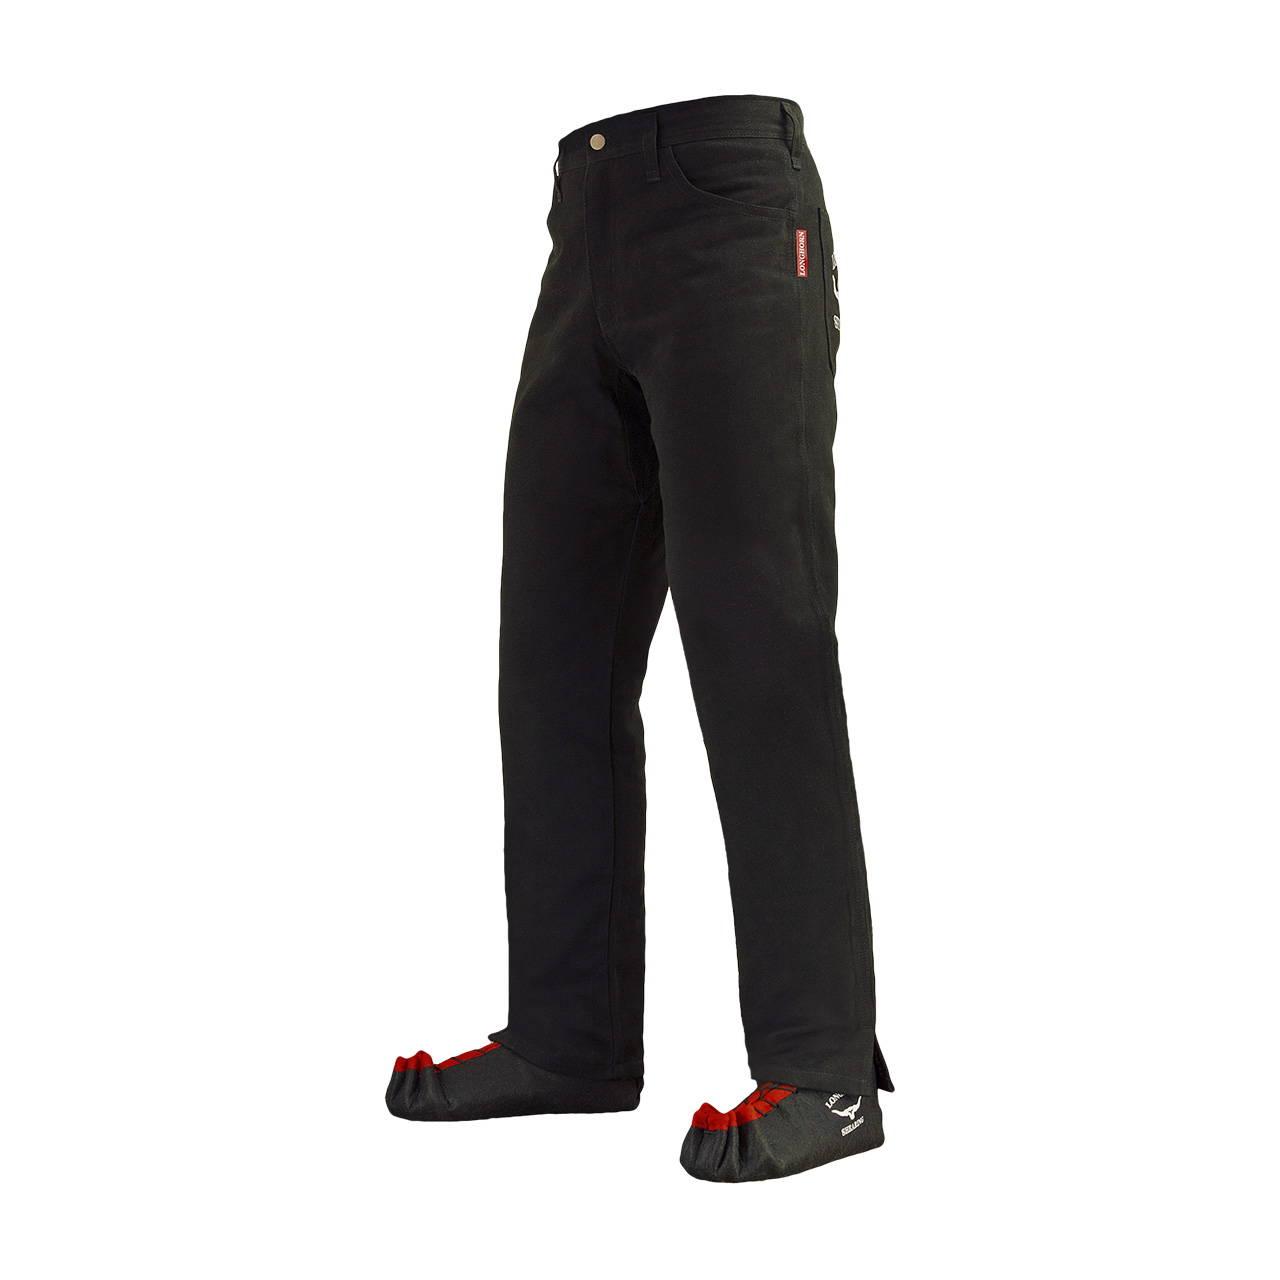 Longhorn™ kalhoty pro střihače ovcí s 2 předními kapsami velikost Regular 36/30 R4 3/4